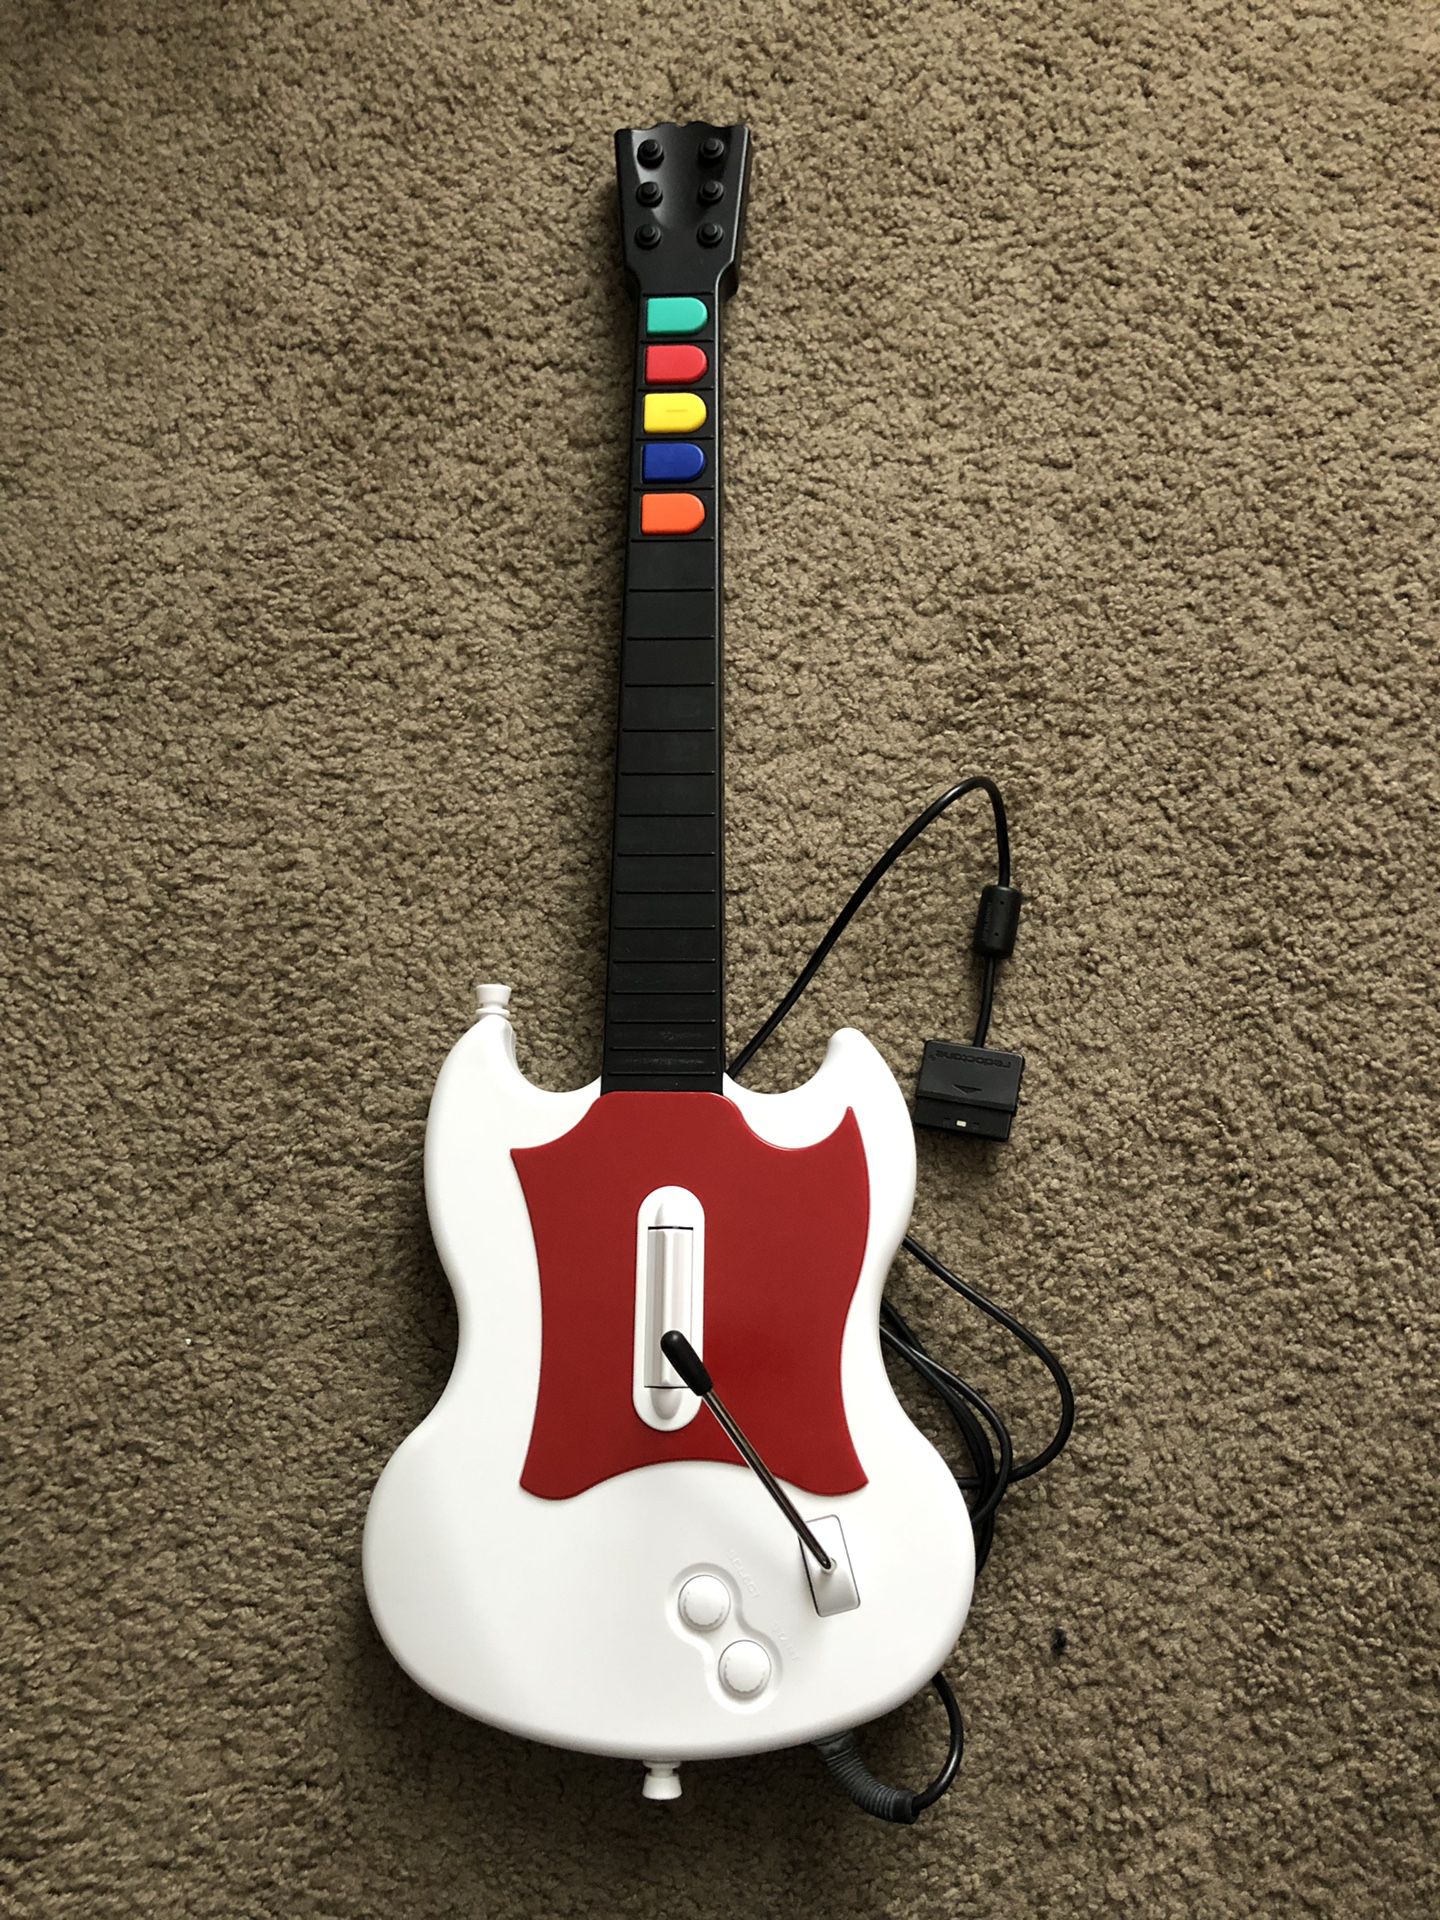 PS2 Guitar Hero Guitar Controller